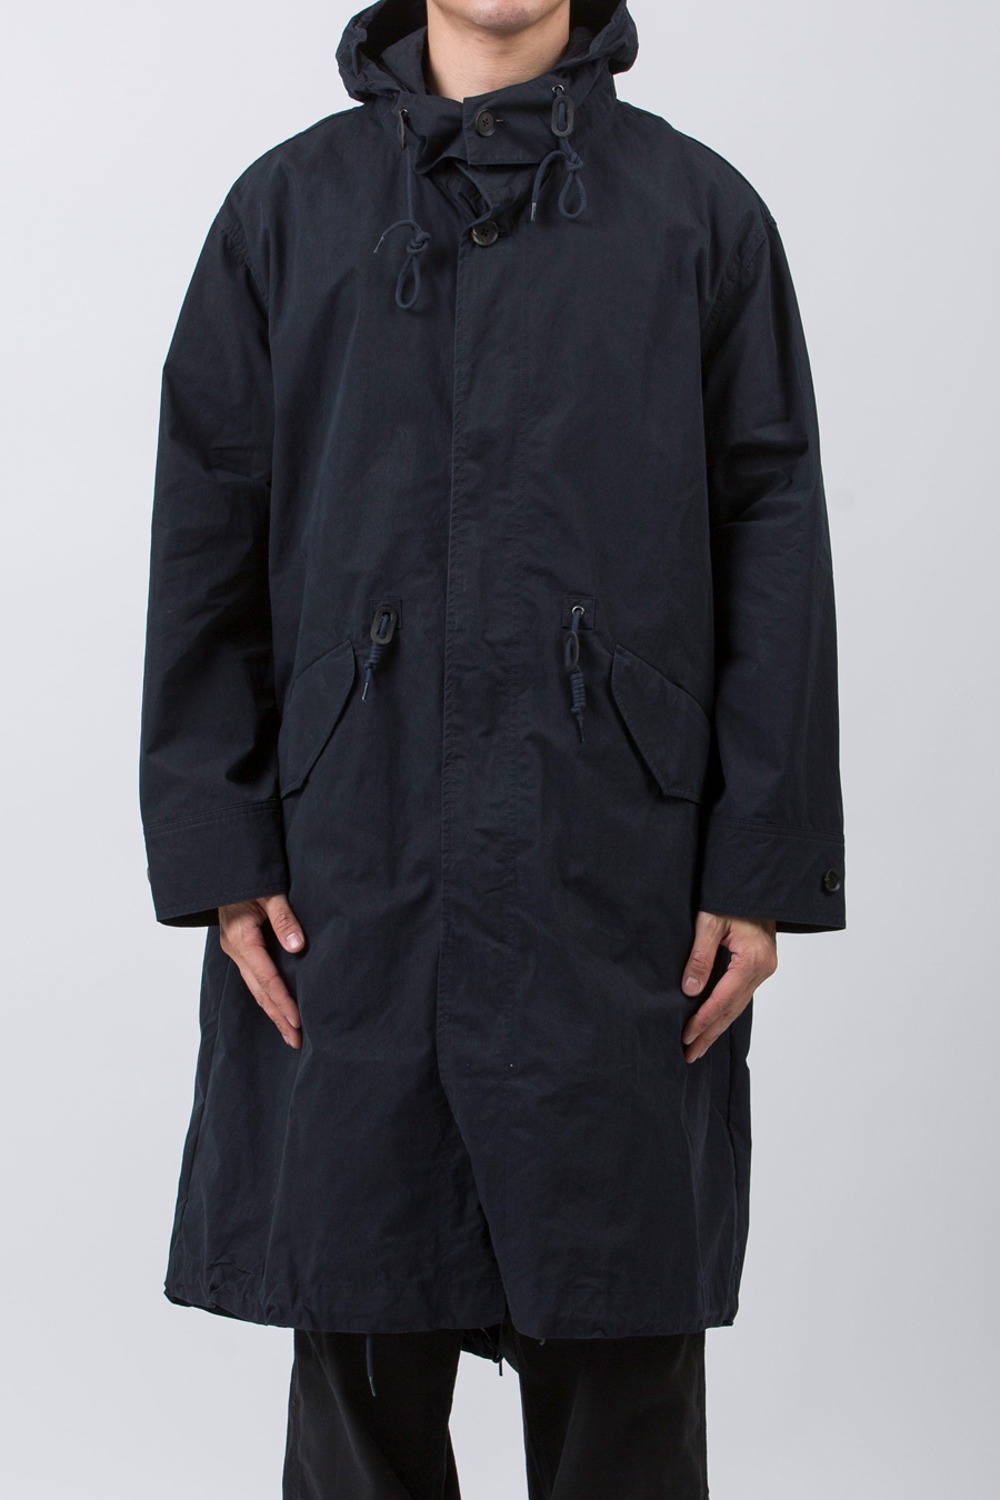 (23FW) EXCLUSIVE - HIGHDENSITY WEATHER CLOTH MODS COAT DARK NAVY